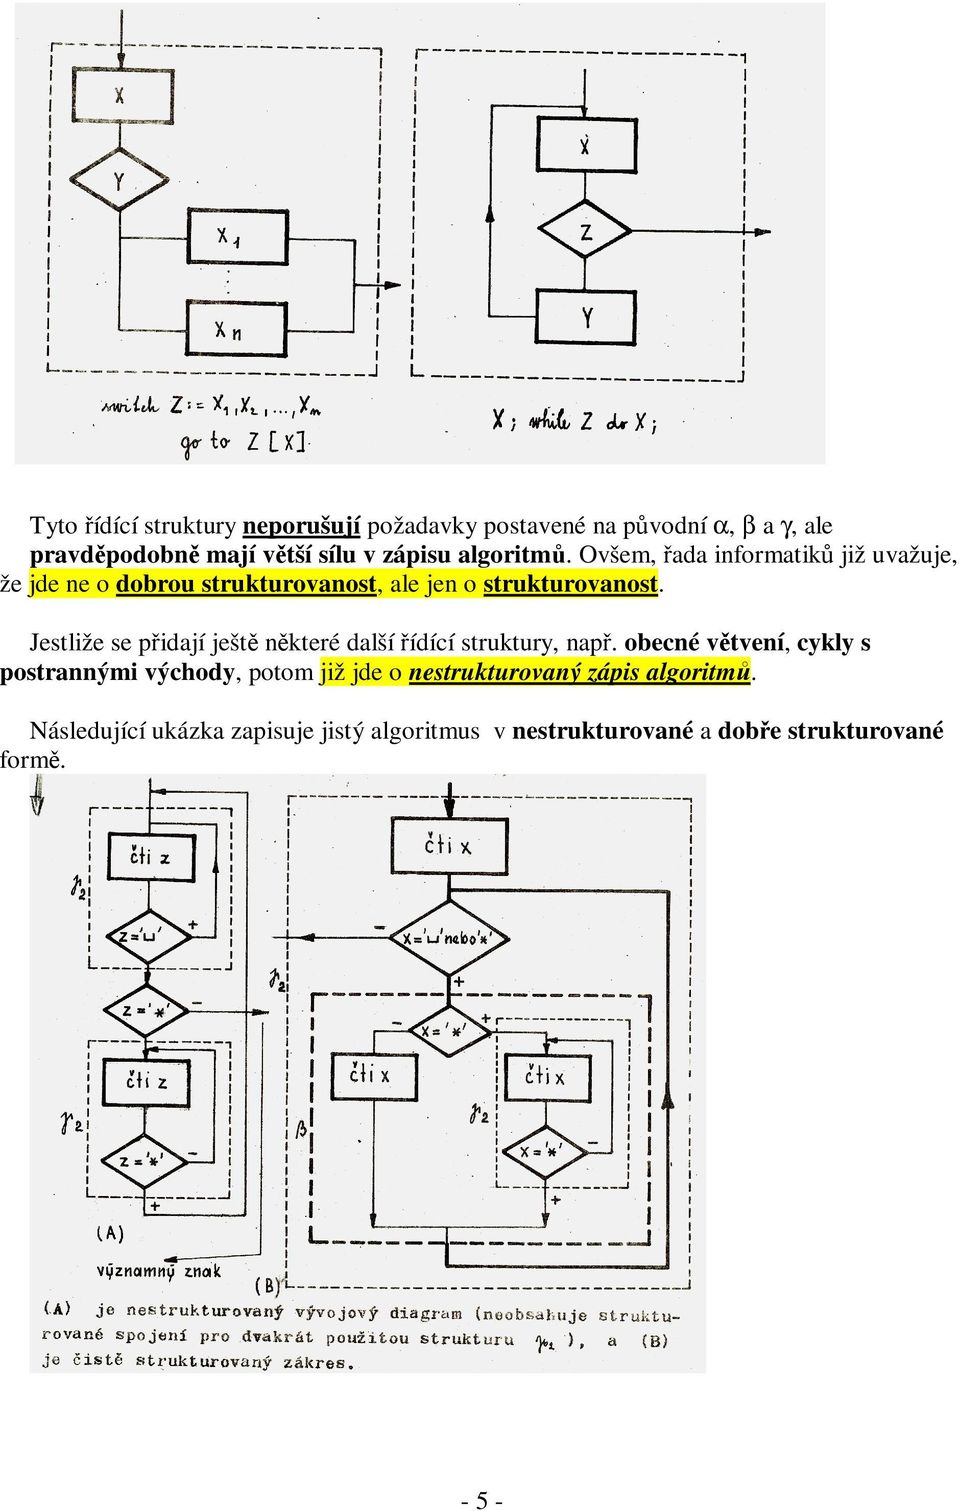 Tuto teoretickou otázku řešil v roce 1980 japonský informatik Kosaraju viz (Kosaraju, 1980).